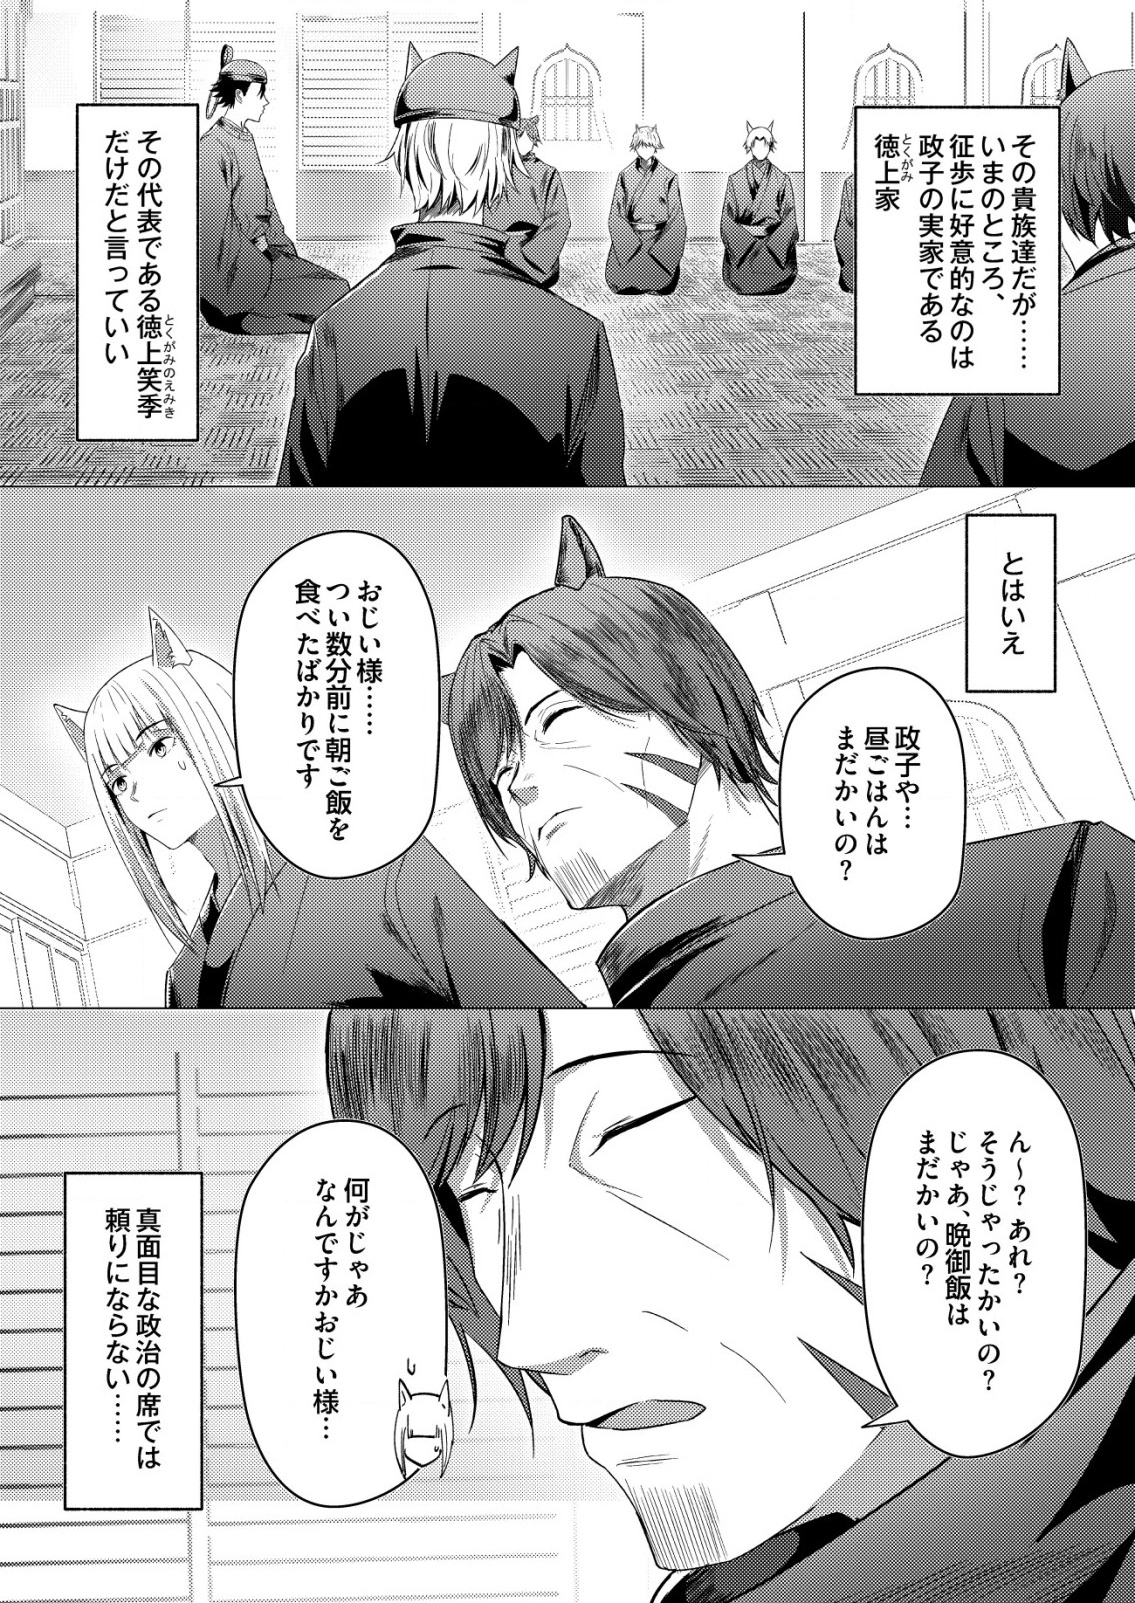 Isekai De kenja No Ishi To Yoba Rete Imasu - Chapter 20 - Page 2